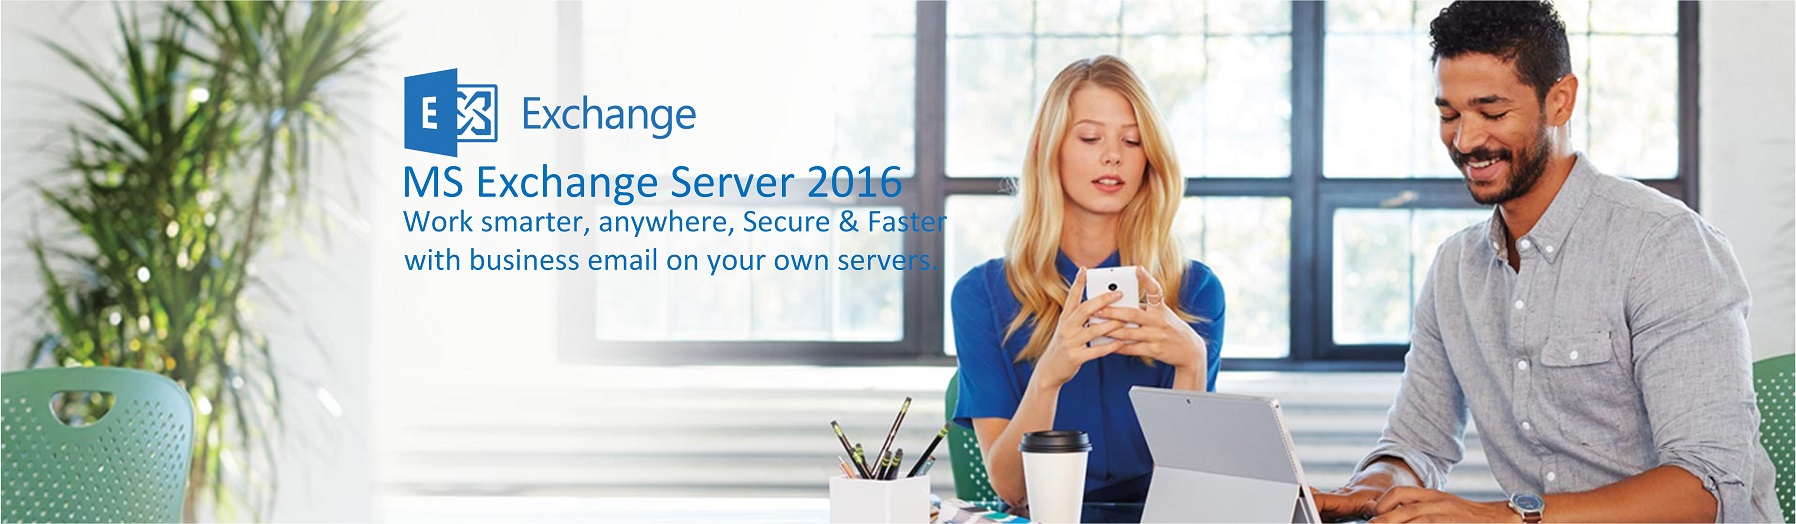 MS Exchange Server 2016